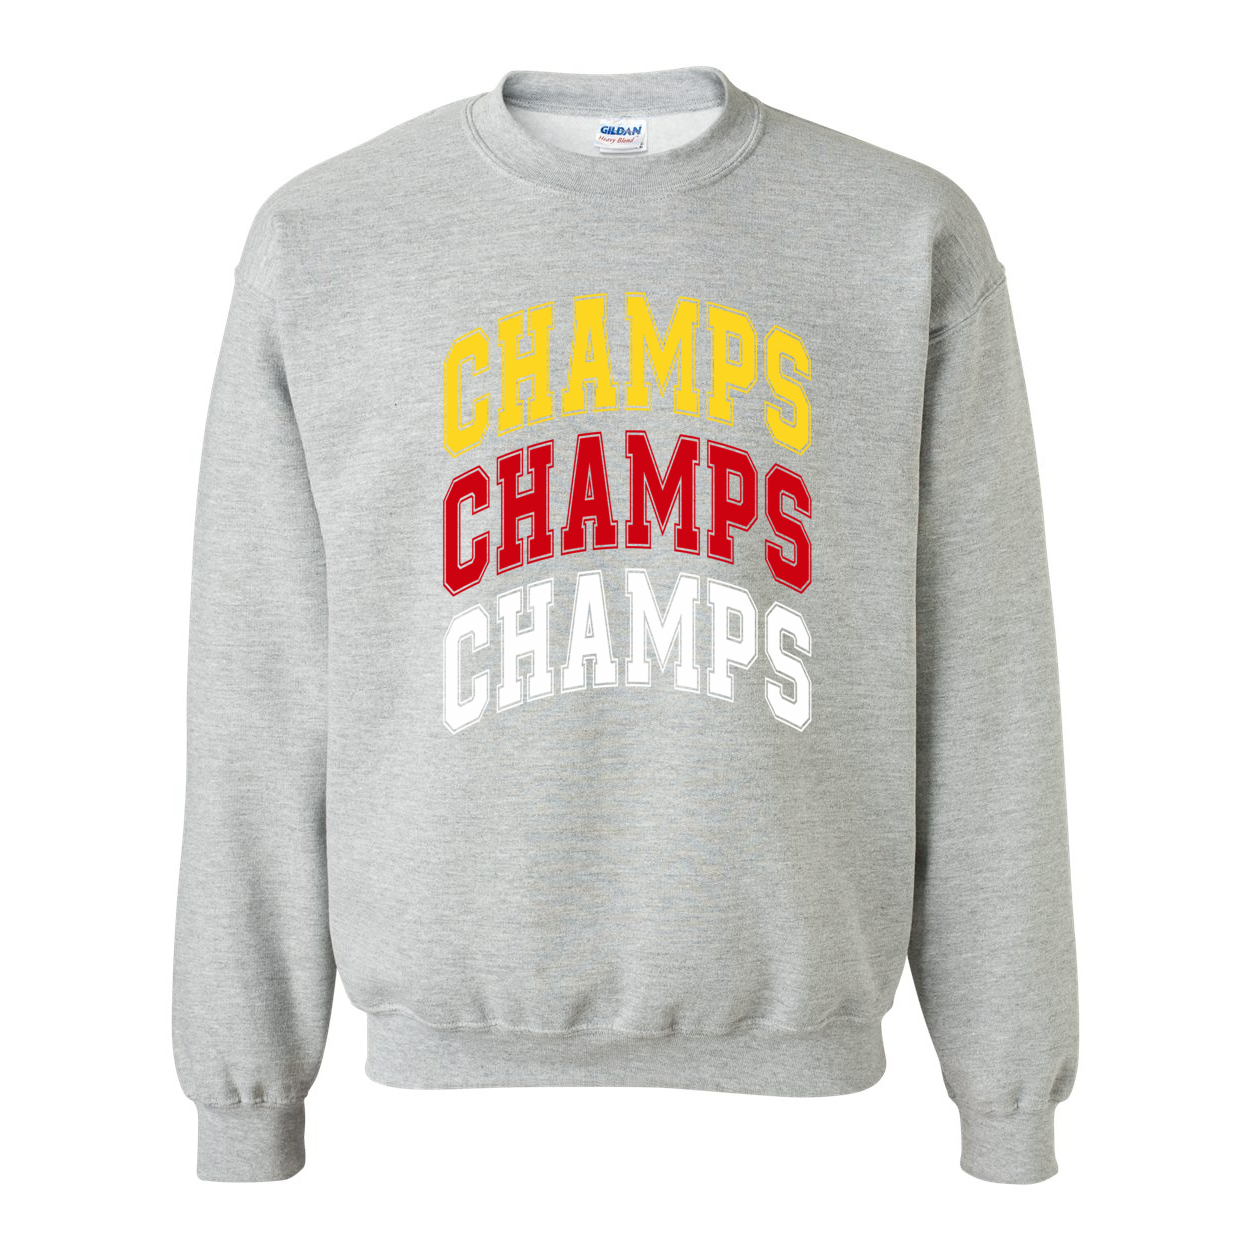 3 Time Champs - Crewneck Sweatshirt